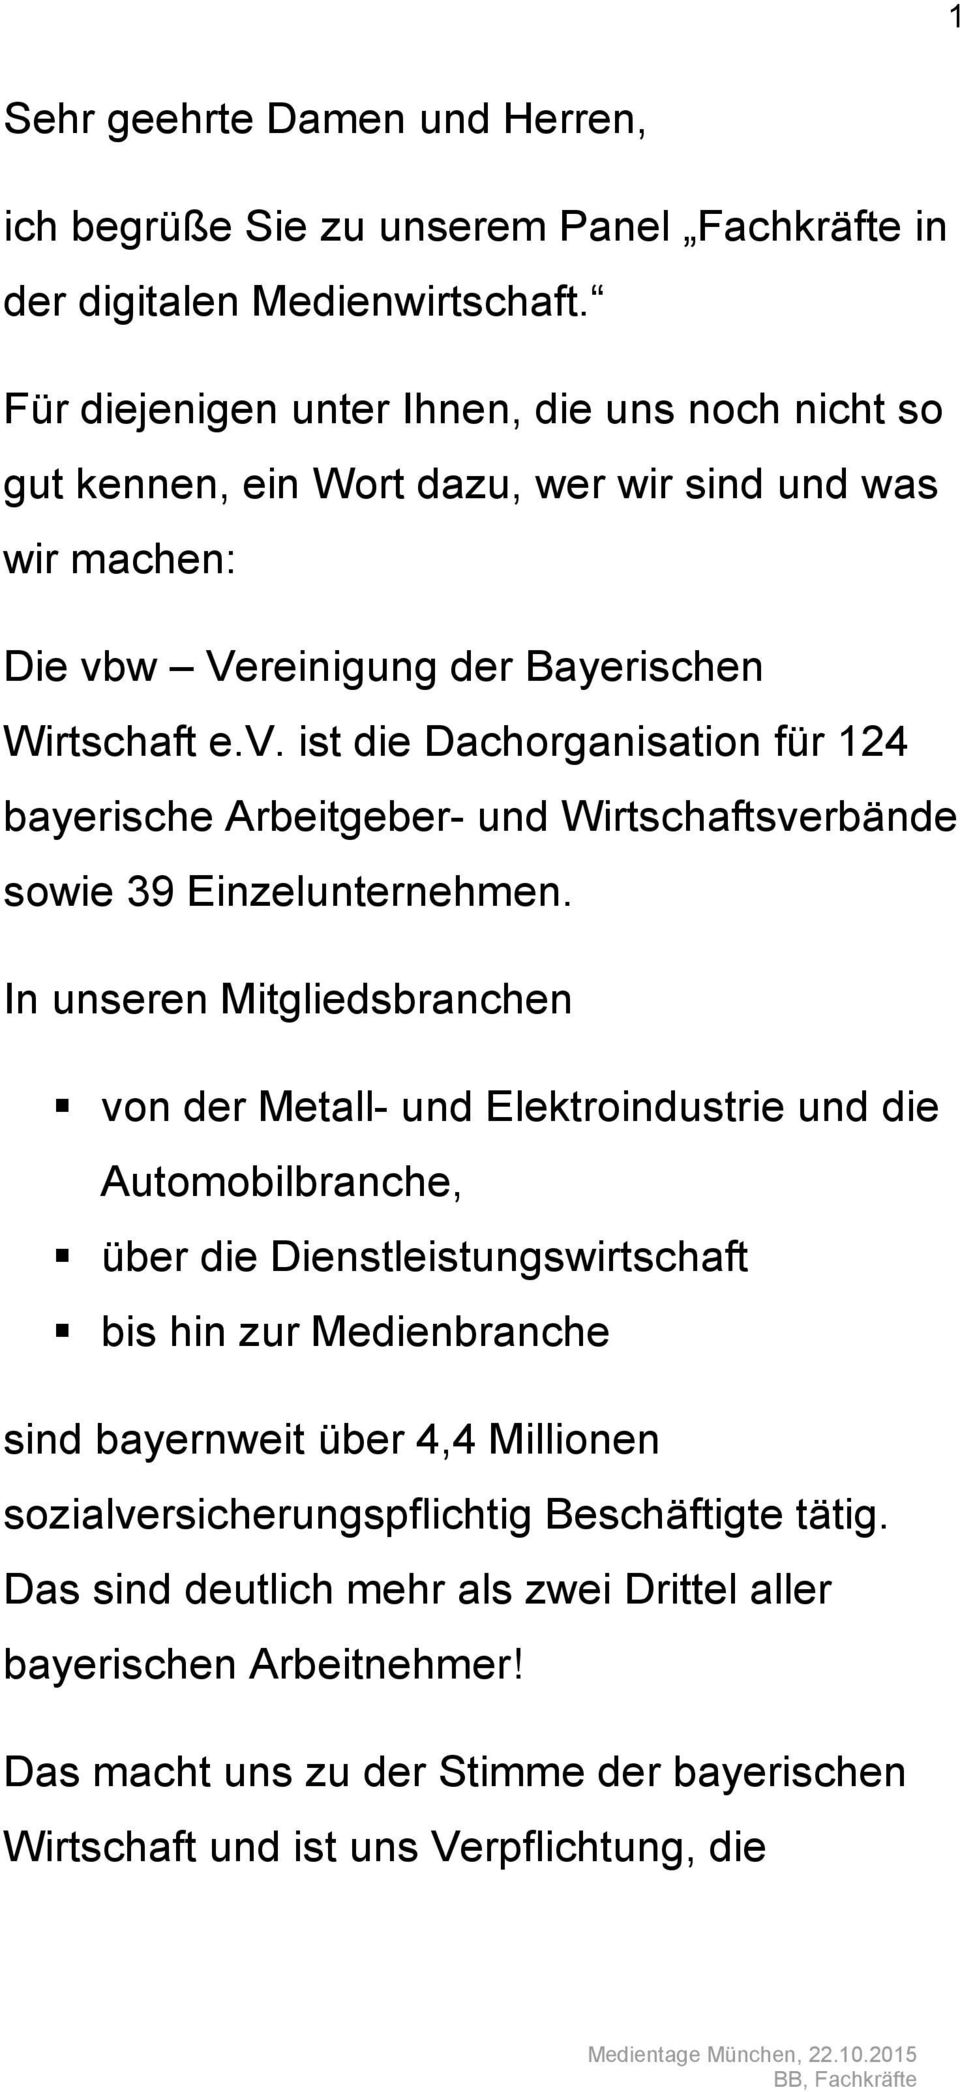 w Vereinigung der Bayerischen Wirtschaft e.v. ist die Dachorganisation für 124 bayerische Arbeitgeber- und Wirtschaftsverbände sowie 39 Einzelunternehmen.